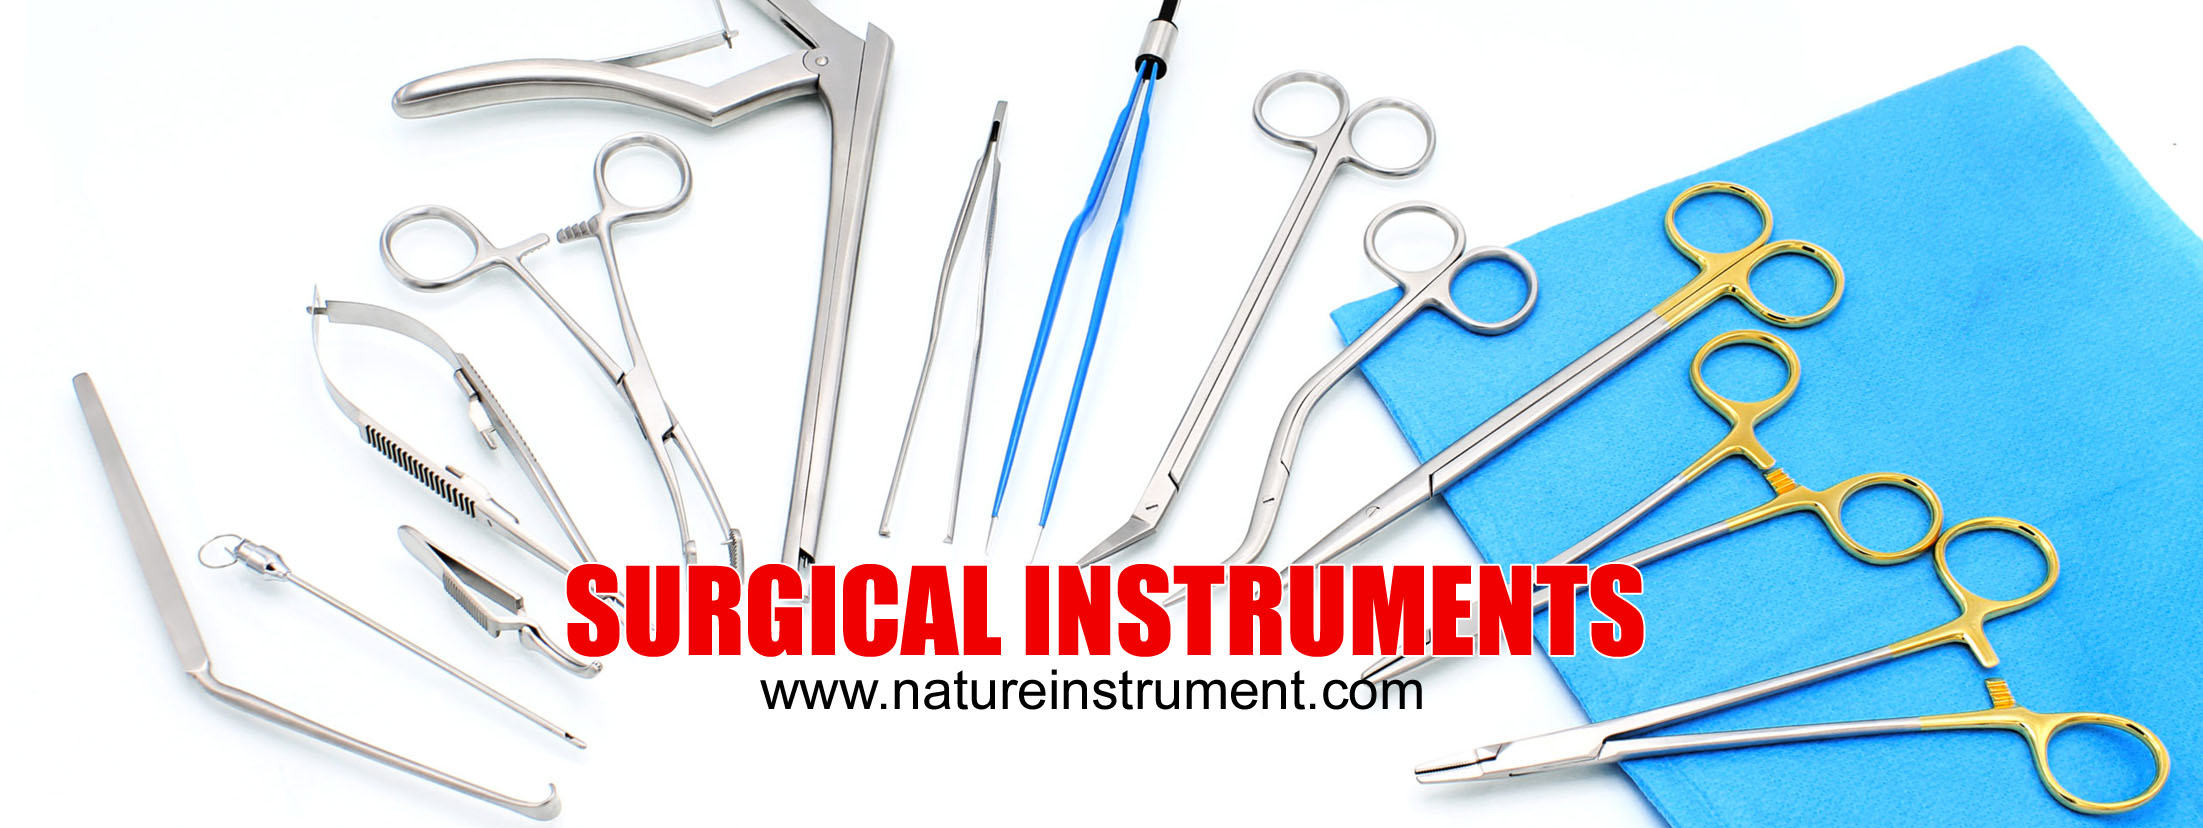 https://natureinstrument.com/source/banner/main/nature-instrument-surgical-instruments.jpg